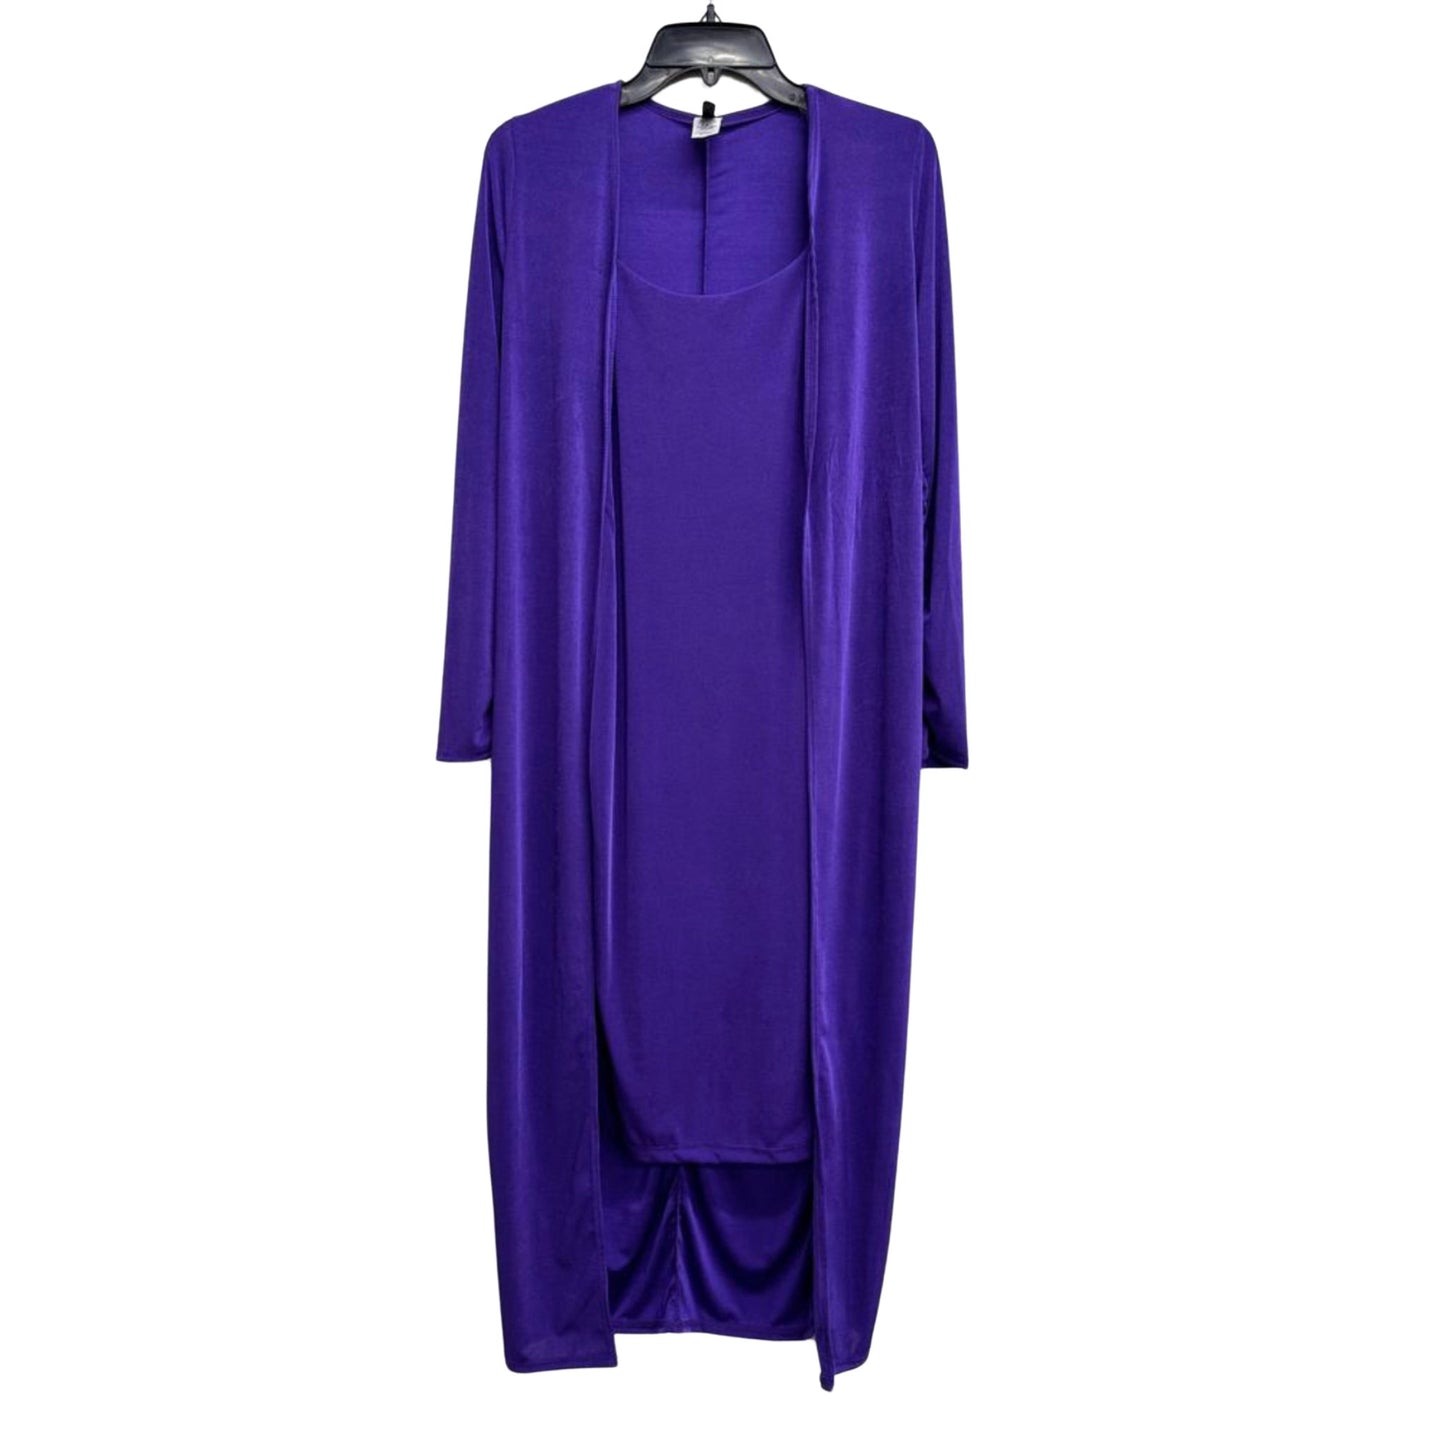 Elegant cardigan dress set - Lavish life LLC 